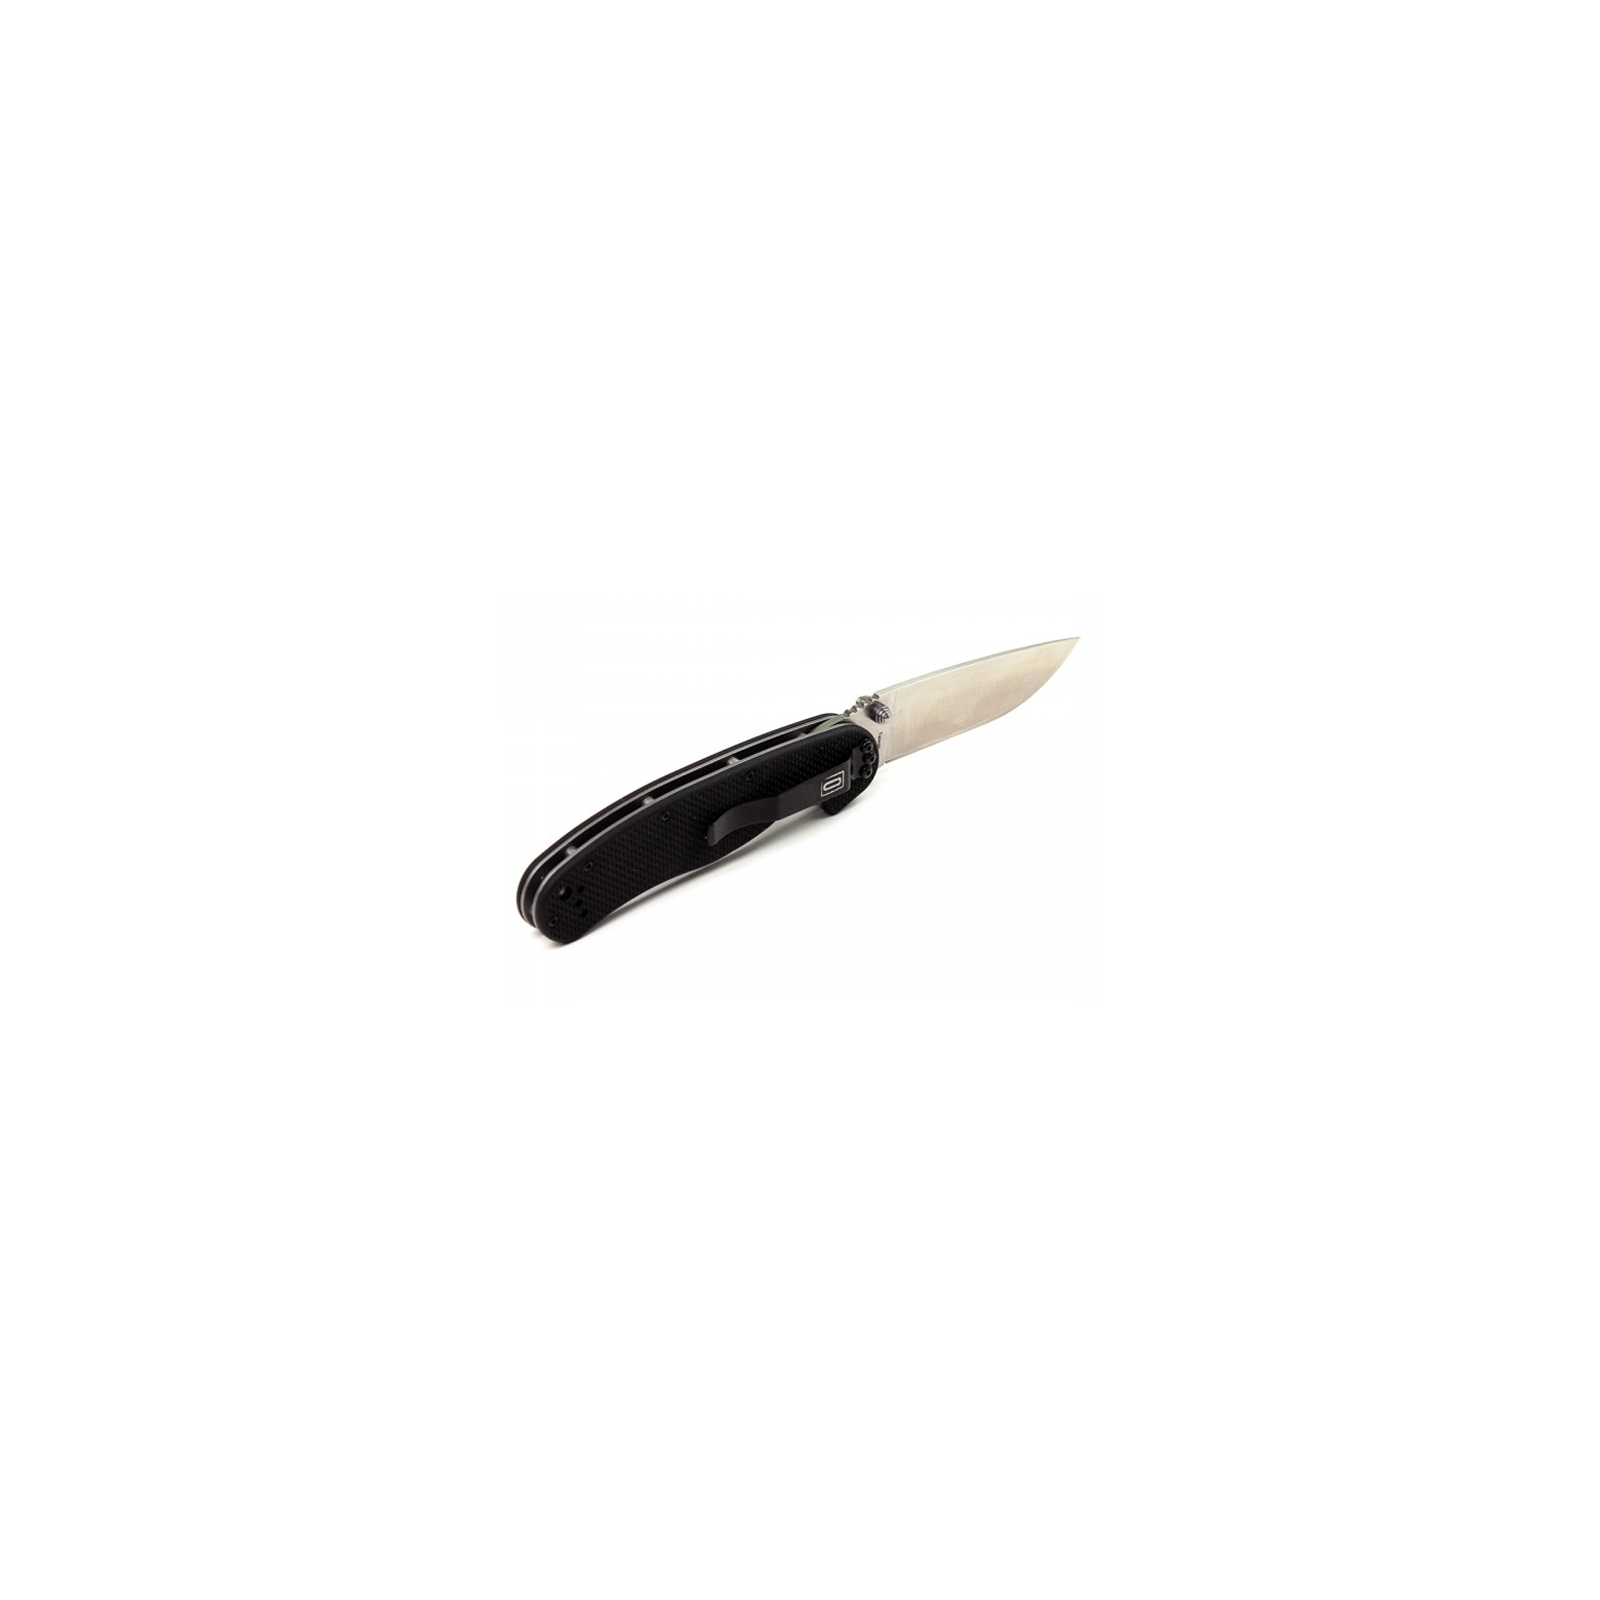 Нож Ontario RAT-1A Black Handle (8870) изображение 2